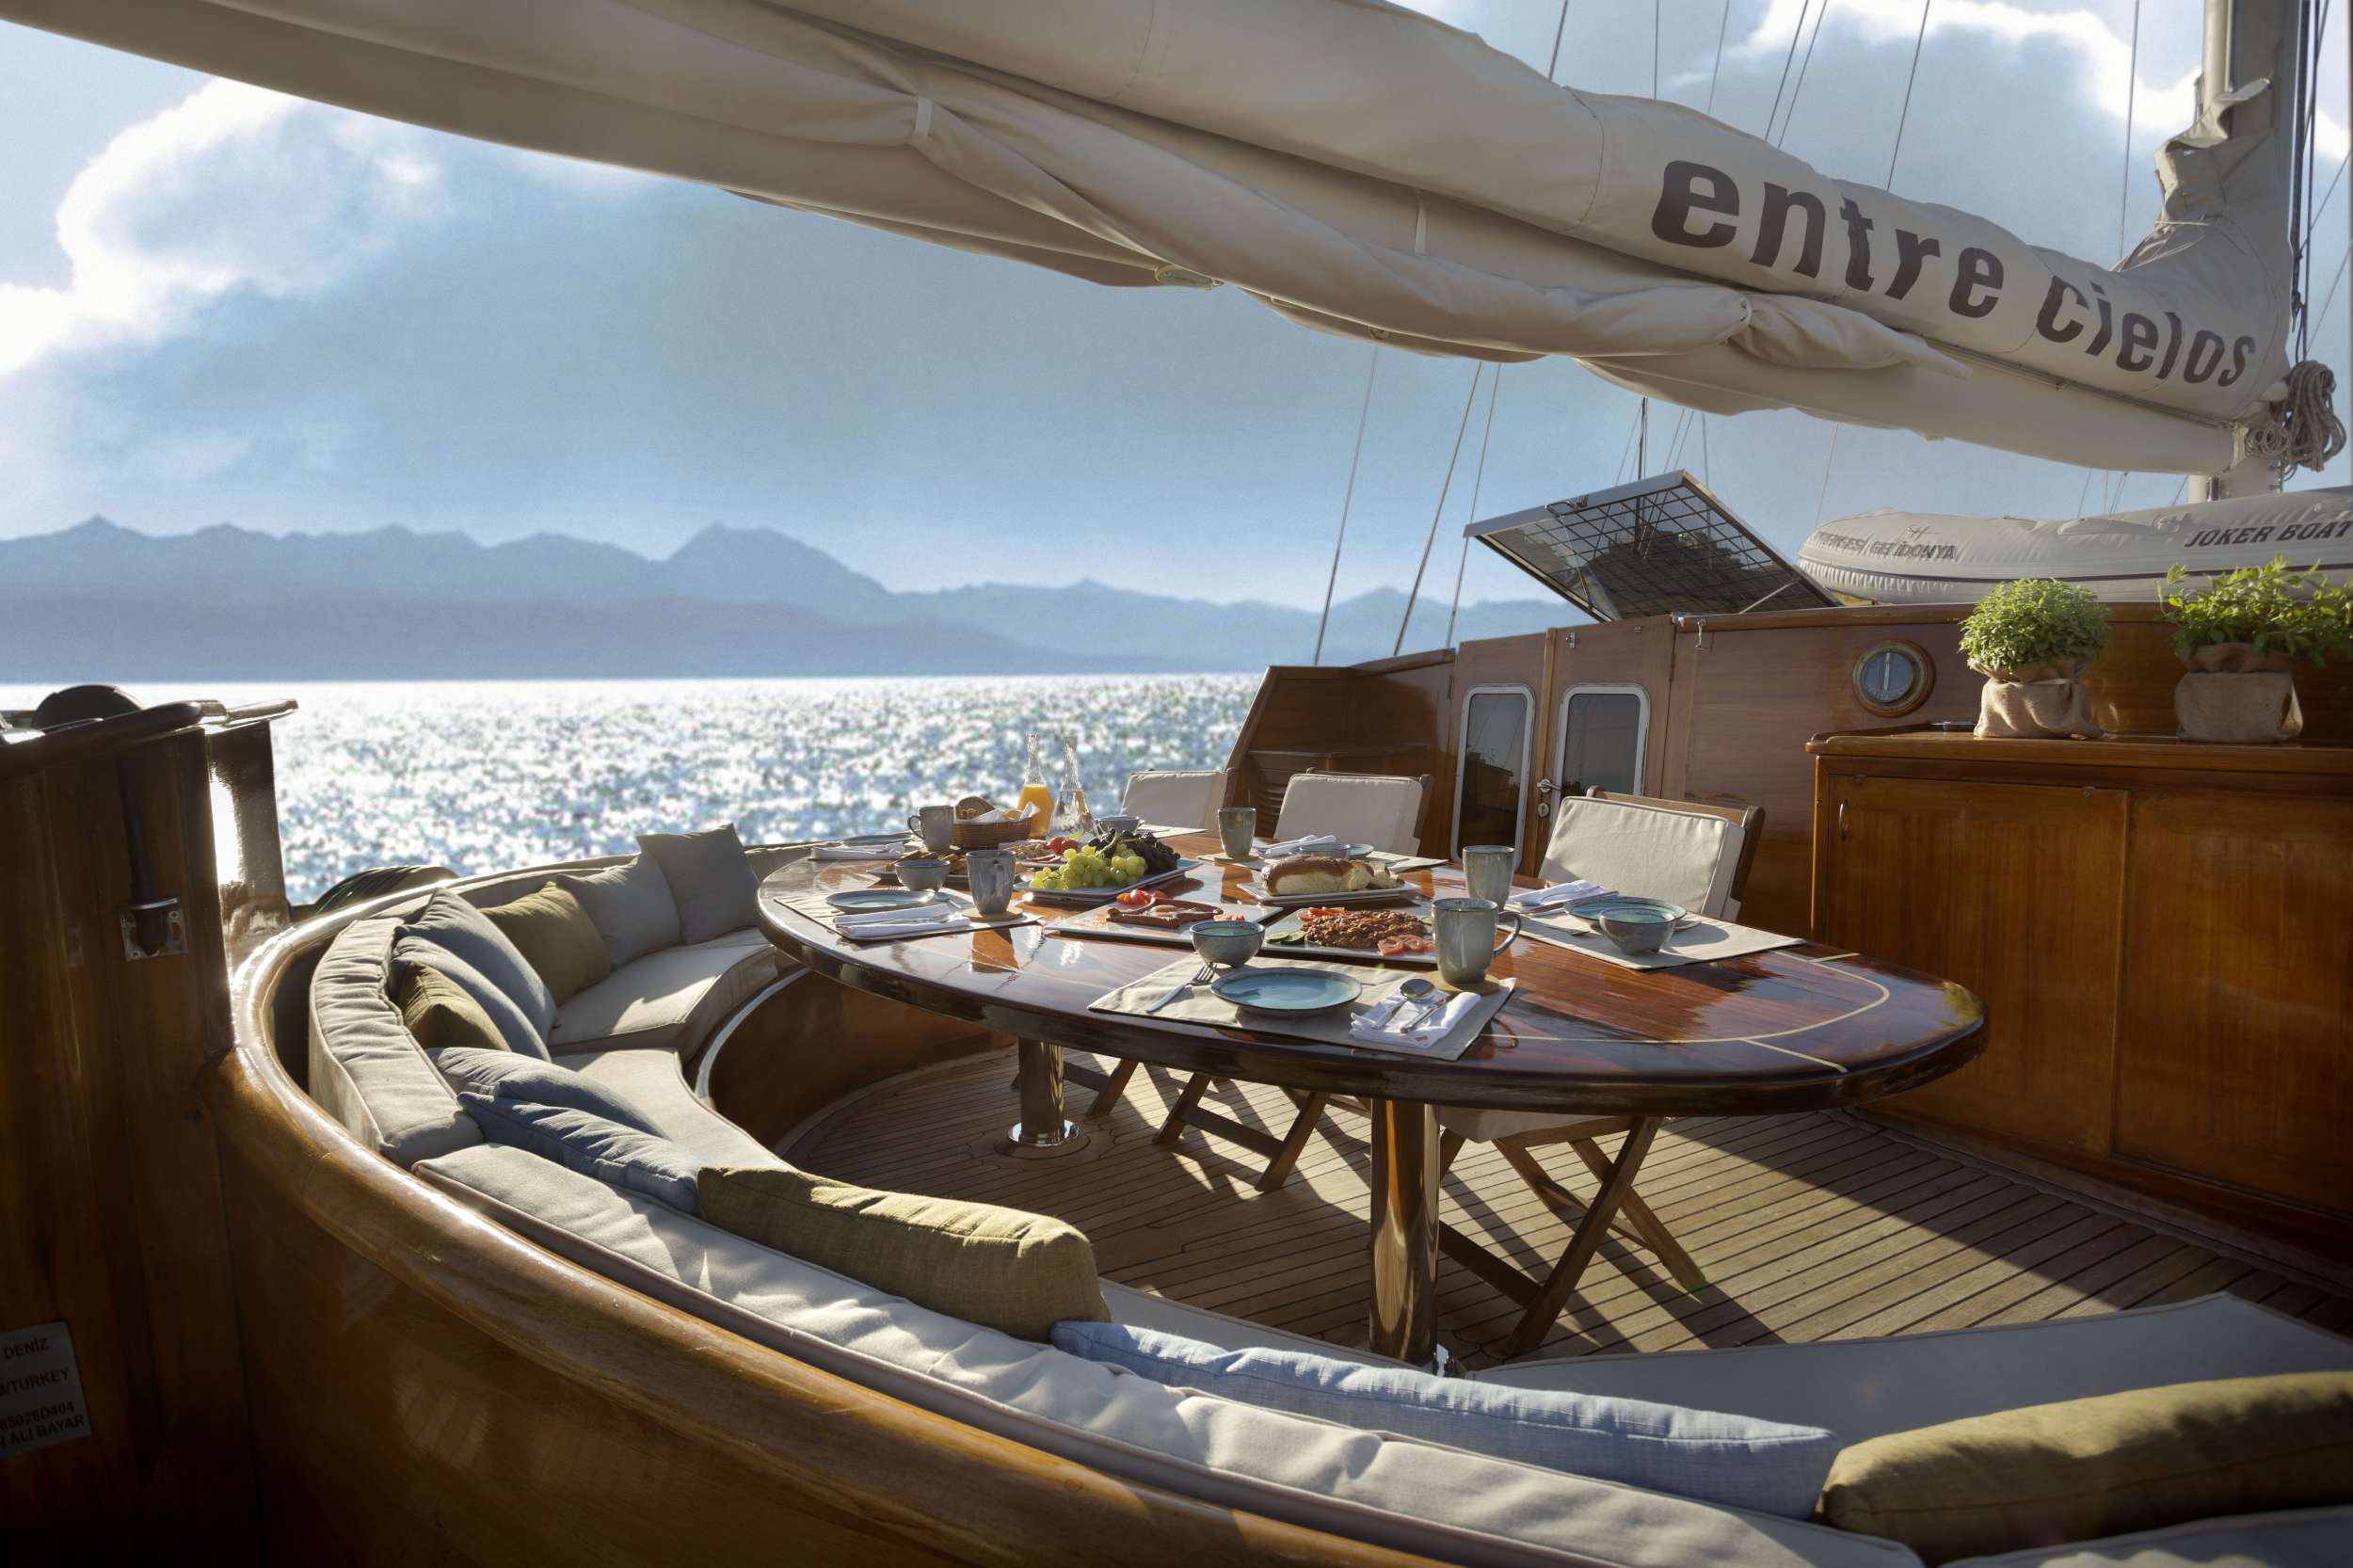 ENTRE CIELOS - Yacht Charter Milos & Boat hire in Greece 3